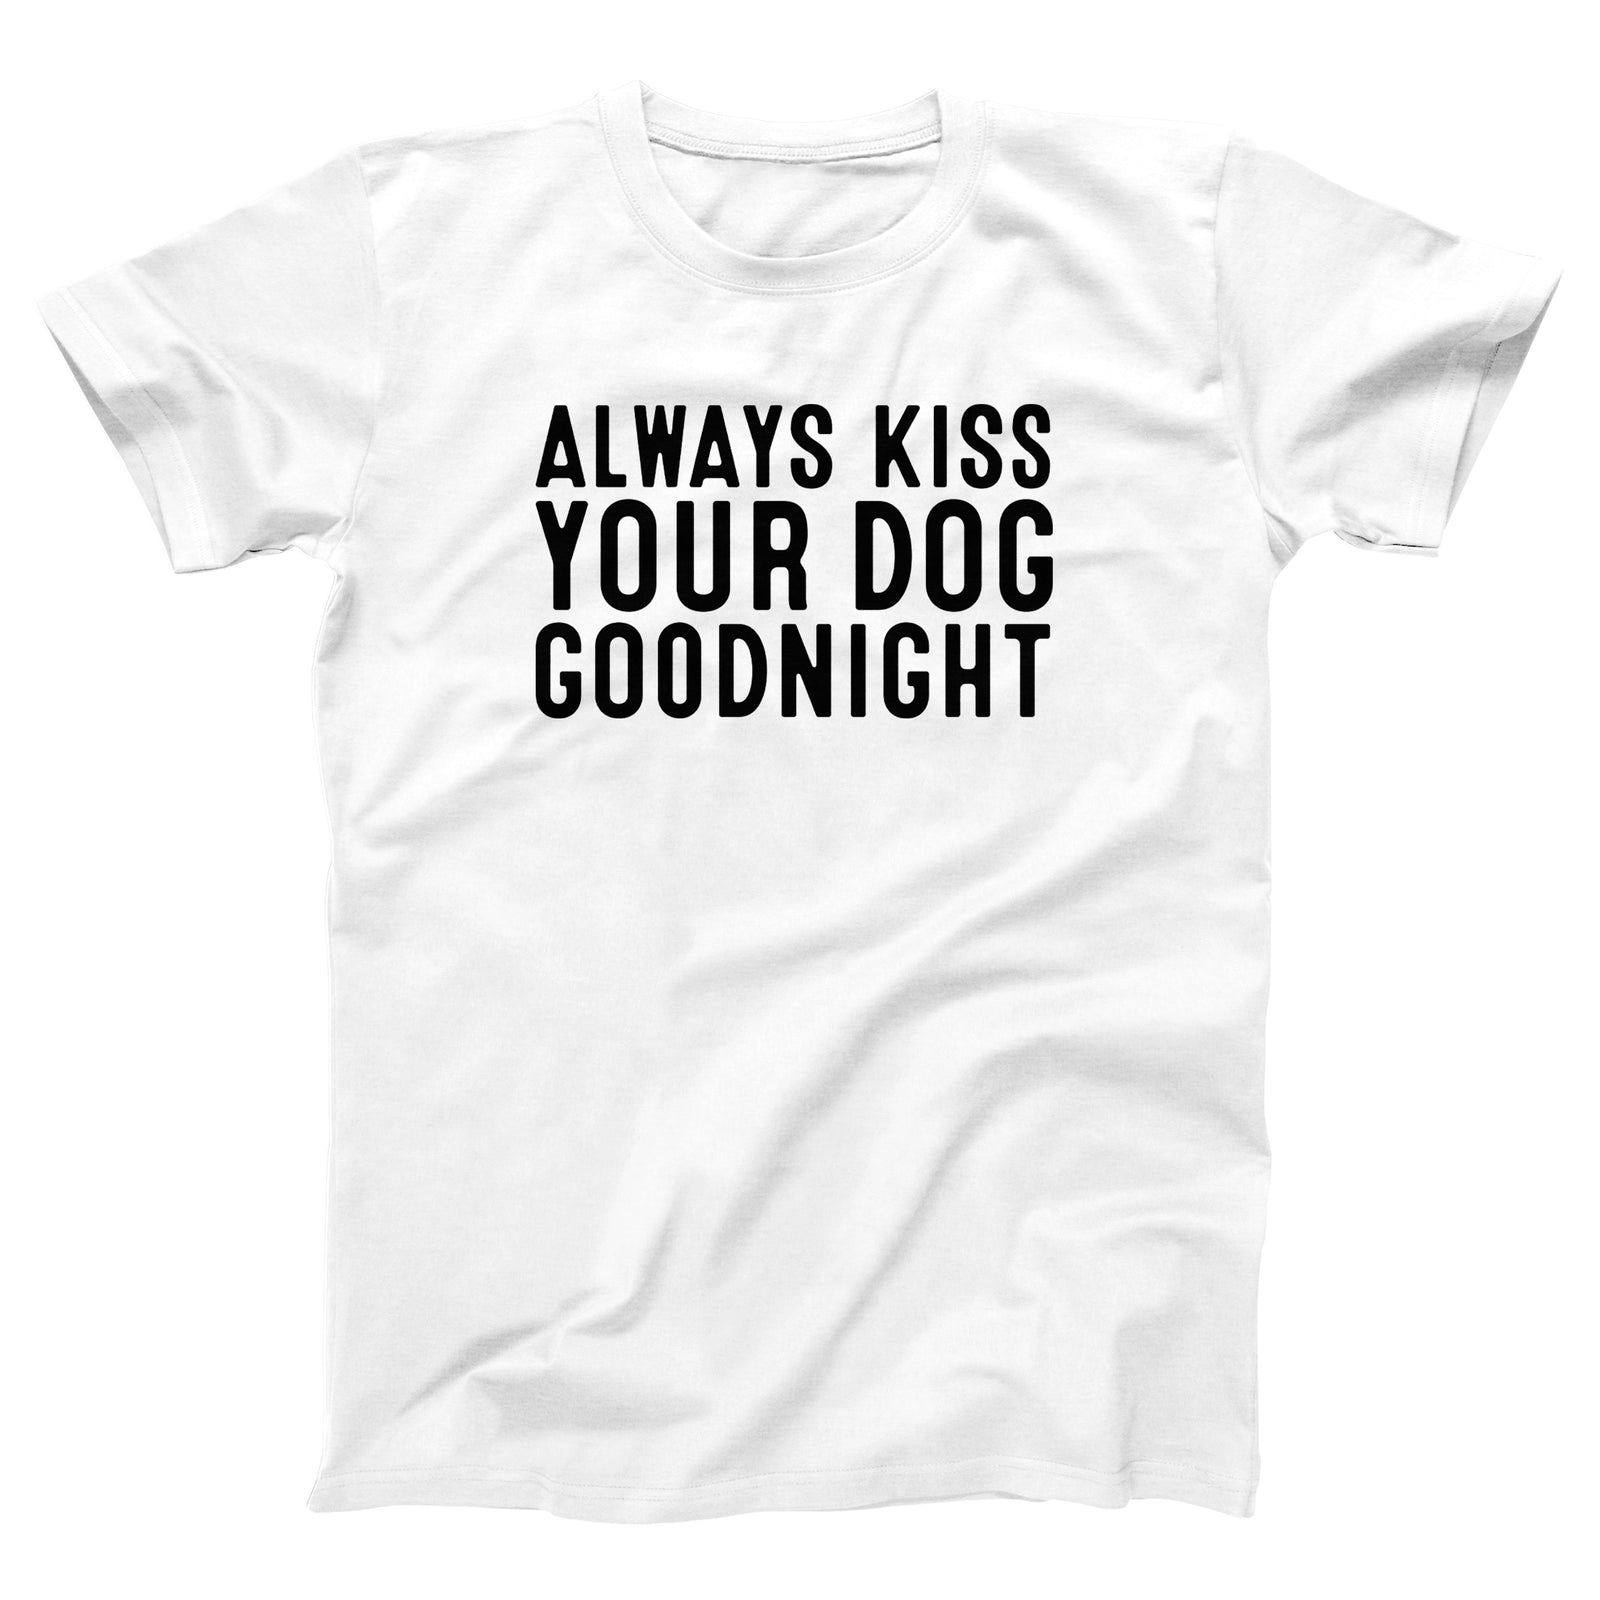 //cdn.shopify.com/s/files/1/0274/2488/2766/products/kiss-your-dog-goodnight-menunisex-t-shirt-520539_5000x.jpg?v=1622621460 5000w,
    //cdn.shopify.com/s/files/1/0274/2488/2766/products/kiss-your-dog-goodnight-menunisex-t-shirt-520539_4500x.jpg?v=1622621460 4500w,
    //cdn.shopify.com/s/files/1/0274/2488/2766/products/kiss-your-dog-goodnight-menunisex-t-shirt-520539_4000x.jpg?v=1622621460 4000w,
    //cdn.shopify.com/s/files/1/0274/2488/2766/products/kiss-your-dog-goodnight-menunisex-t-shirt-520539_3500x.jpg?v=1622621460 3500w,
    //cdn.shopify.com/s/files/1/0274/2488/2766/products/kiss-your-dog-goodnight-menunisex-t-shirt-520539_3000x.jpg?v=1622621460 3000w,
    //cdn.shopify.com/s/files/1/0274/2488/2766/products/kiss-your-dog-goodnight-menunisex-t-shirt-520539_2500x.jpg?v=1622621460 2500w,
    //cdn.shopify.com/s/files/1/0274/2488/2766/products/kiss-your-dog-goodnight-menunisex-t-shirt-520539_2000x.jpg?v=1622621460 2000w,
    //cdn.shopify.com/s/files/1/0274/2488/2766/products/kiss-your-dog-goodnight-menunisex-t-shirt-520539_1800x.jpg?v=1622621460 1800w,
    //cdn.shopify.com/s/files/1/0274/2488/2766/products/kiss-your-dog-goodnight-menunisex-t-shirt-520539_1600x.jpg?v=1622621460 1600w,
    //cdn.shopify.com/s/files/1/0274/2488/2766/products/kiss-your-dog-goodnight-menunisex-t-shirt-520539_1400x.jpg?v=1622621460 1400w,
    //cdn.shopify.com/s/files/1/0274/2488/2766/products/kiss-your-dog-goodnight-menunisex-t-shirt-520539_1200x.jpg?v=1622621460 1200w,
    //cdn.shopify.com/s/files/1/0274/2488/2766/products/kiss-your-dog-goodnight-menunisex-t-shirt-520539_1000x.jpg?v=1622621460 1000w,
    //cdn.shopify.com/s/files/1/0274/2488/2766/products/kiss-your-dog-goodnight-menunisex-t-shirt-520539_800x.jpg?v=1622621460 800w,
    //cdn.shopify.com/s/files/1/0274/2488/2766/products/kiss-your-dog-goodnight-menunisex-t-shirt-520539_600x.jpg?v=1622621460 600w,
    //cdn.shopify.com/s/files/1/0274/2488/2766/products/kiss-your-dog-goodnight-menunisex-t-shirt-520539_400x.jpg?v=1622621460 400w,
    //cdn.shopify.com/s/files/1/0274/2488/2766/products/kiss-your-dog-goodnight-menunisex-t-shirt-520539_200x.jpg?v=1622621460 200w